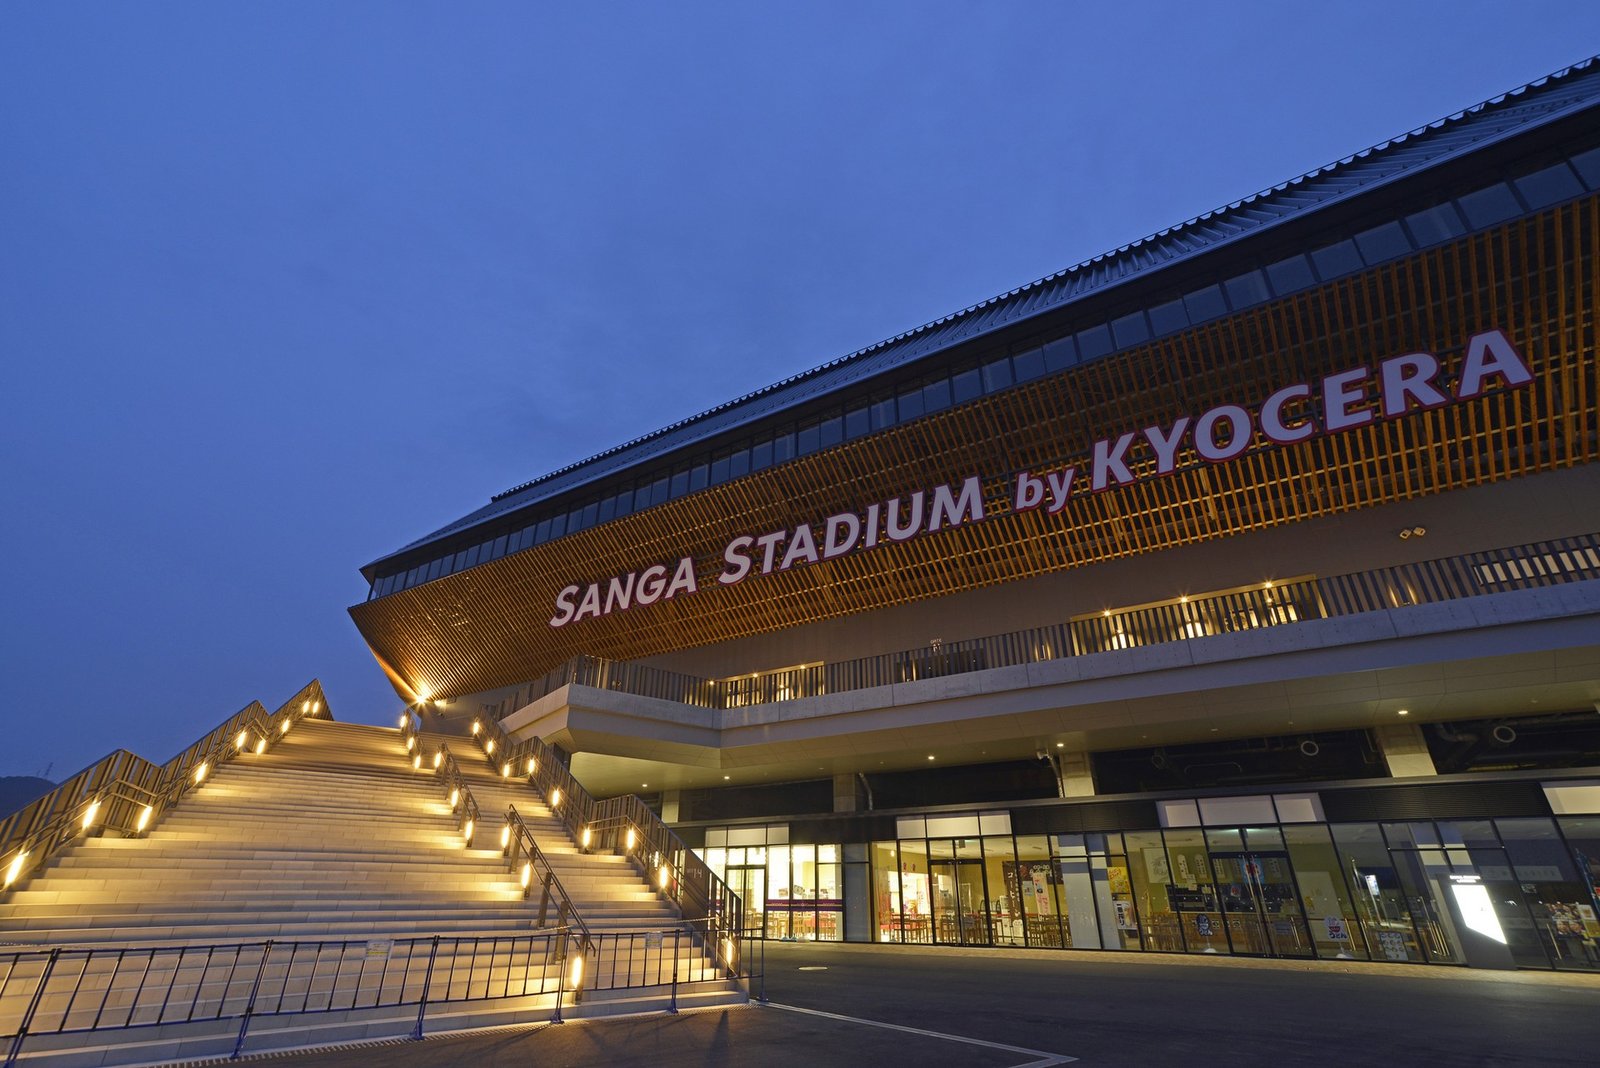 Sanga Stadium by Kyocera, Kameoka / Kyoto